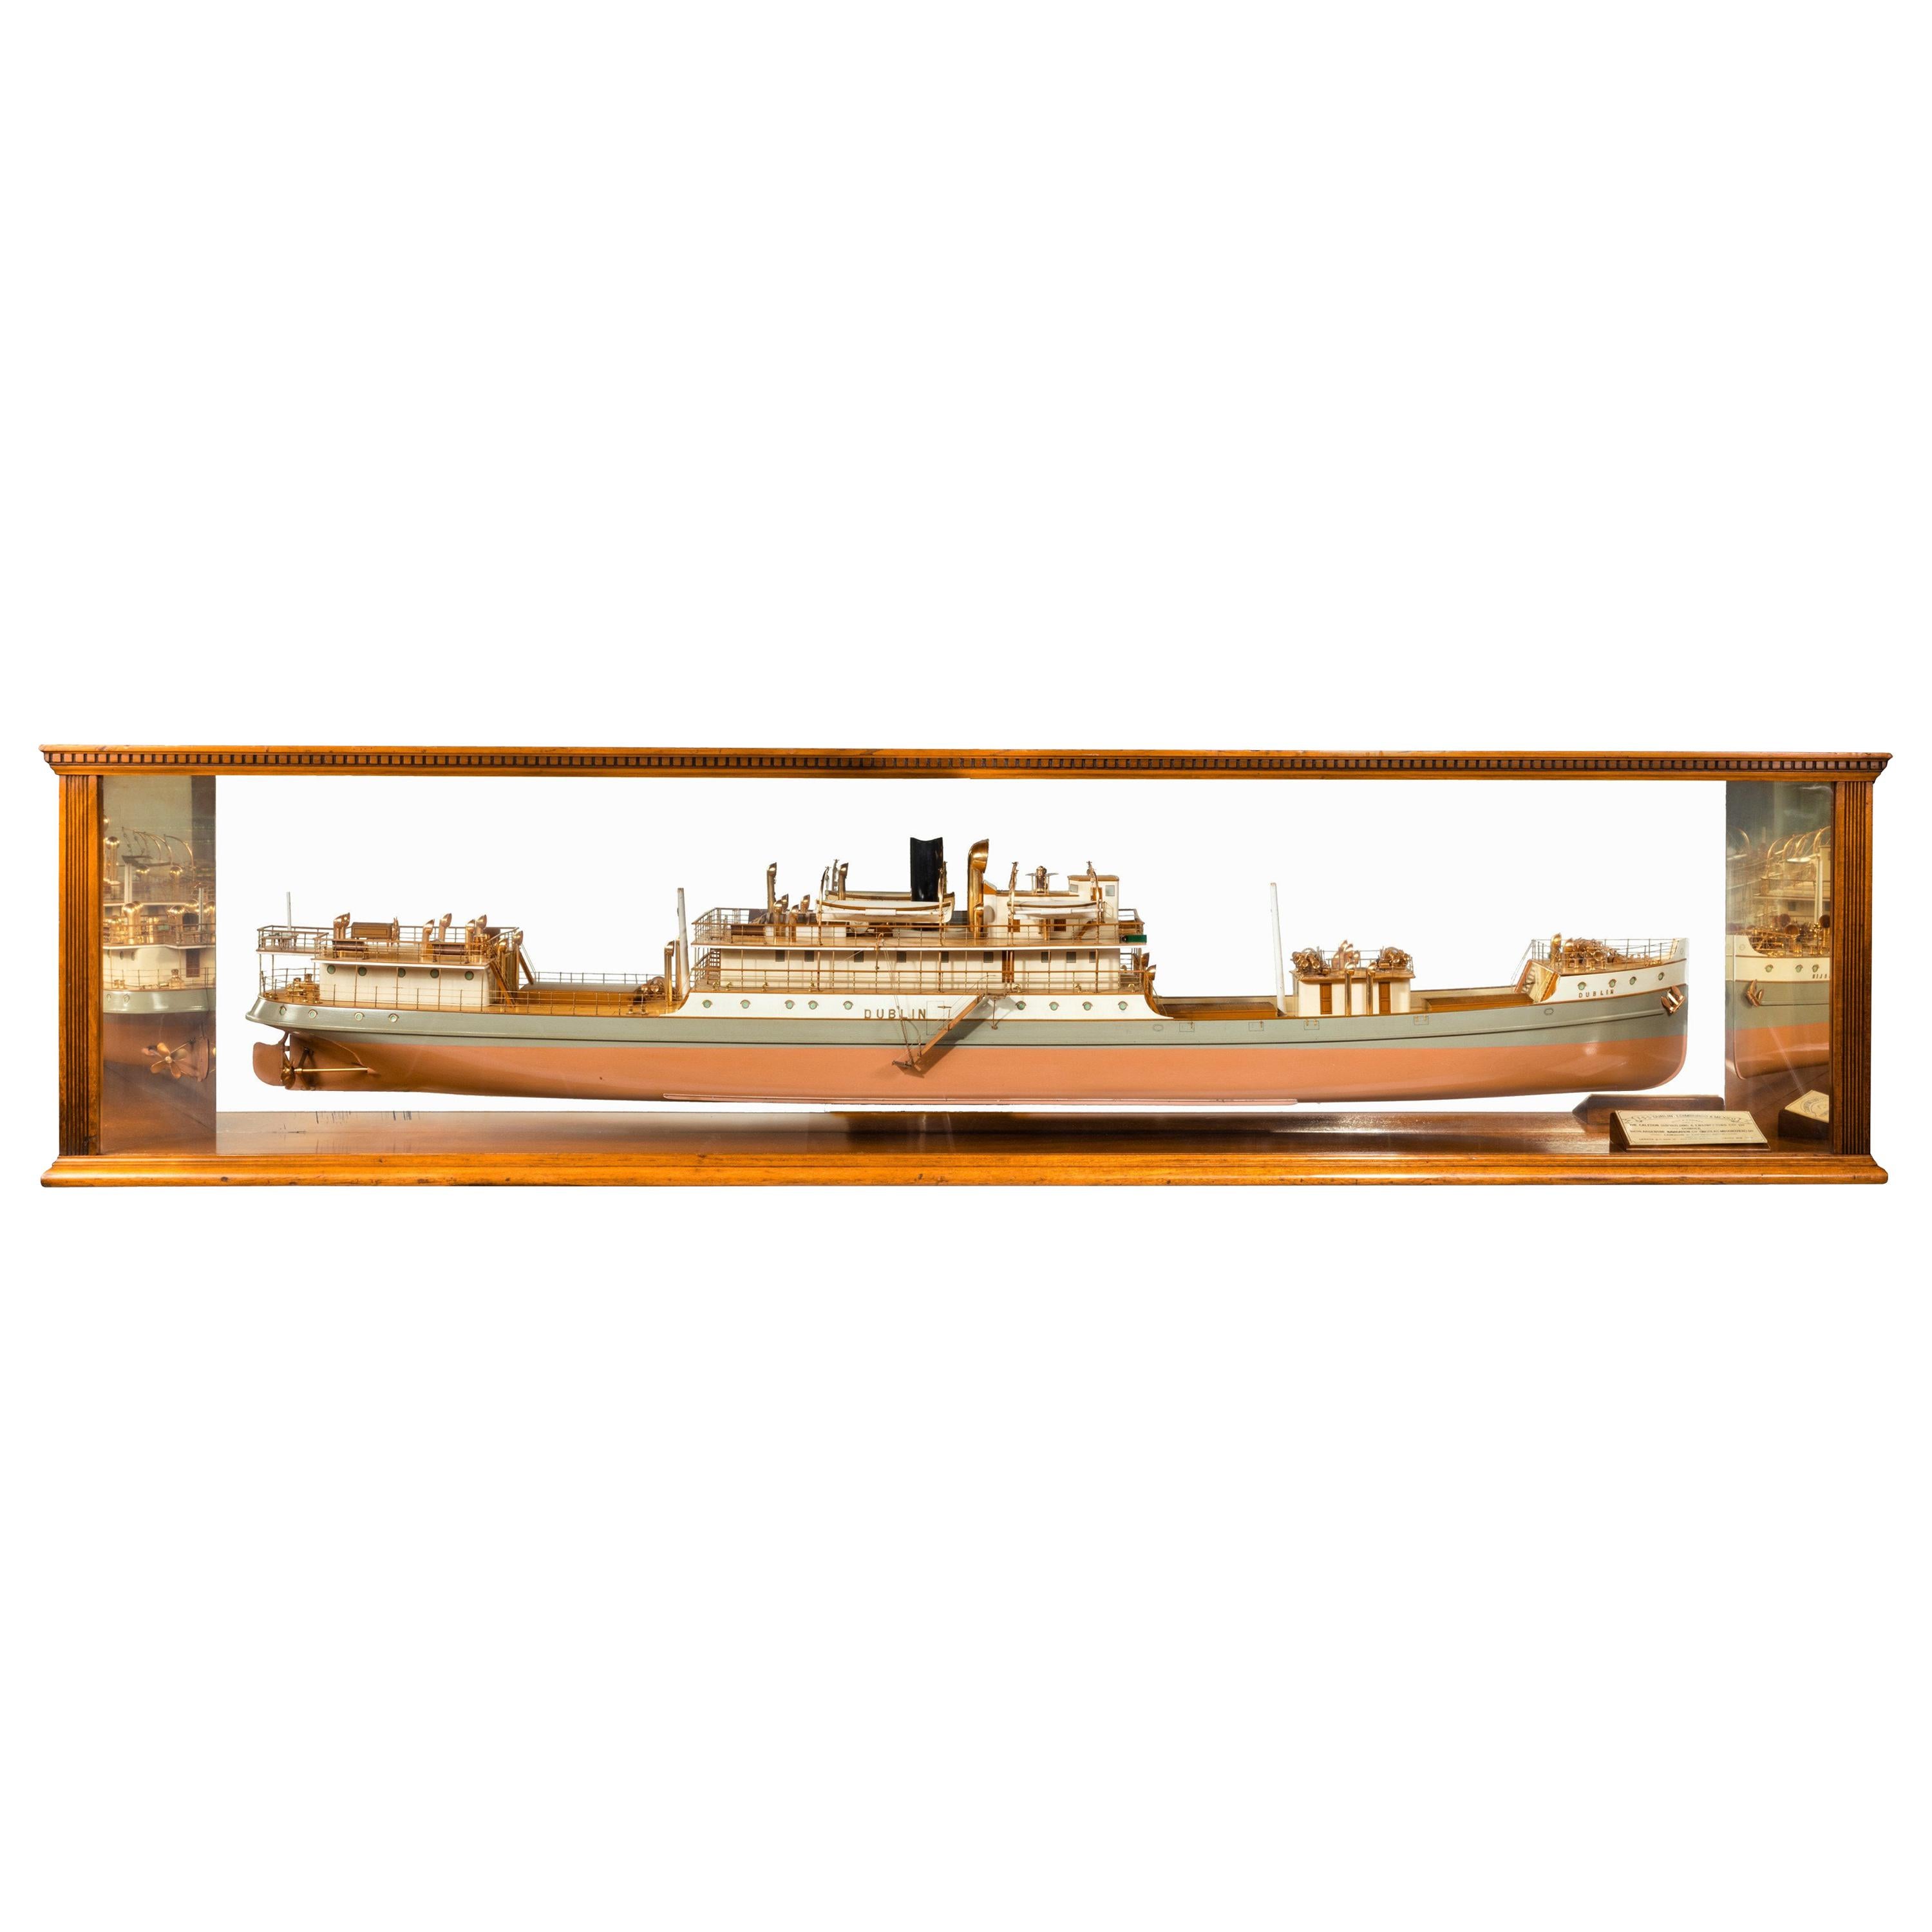 Modell der Schiffskabine von drei Schwesterschiffen im Gehäuse